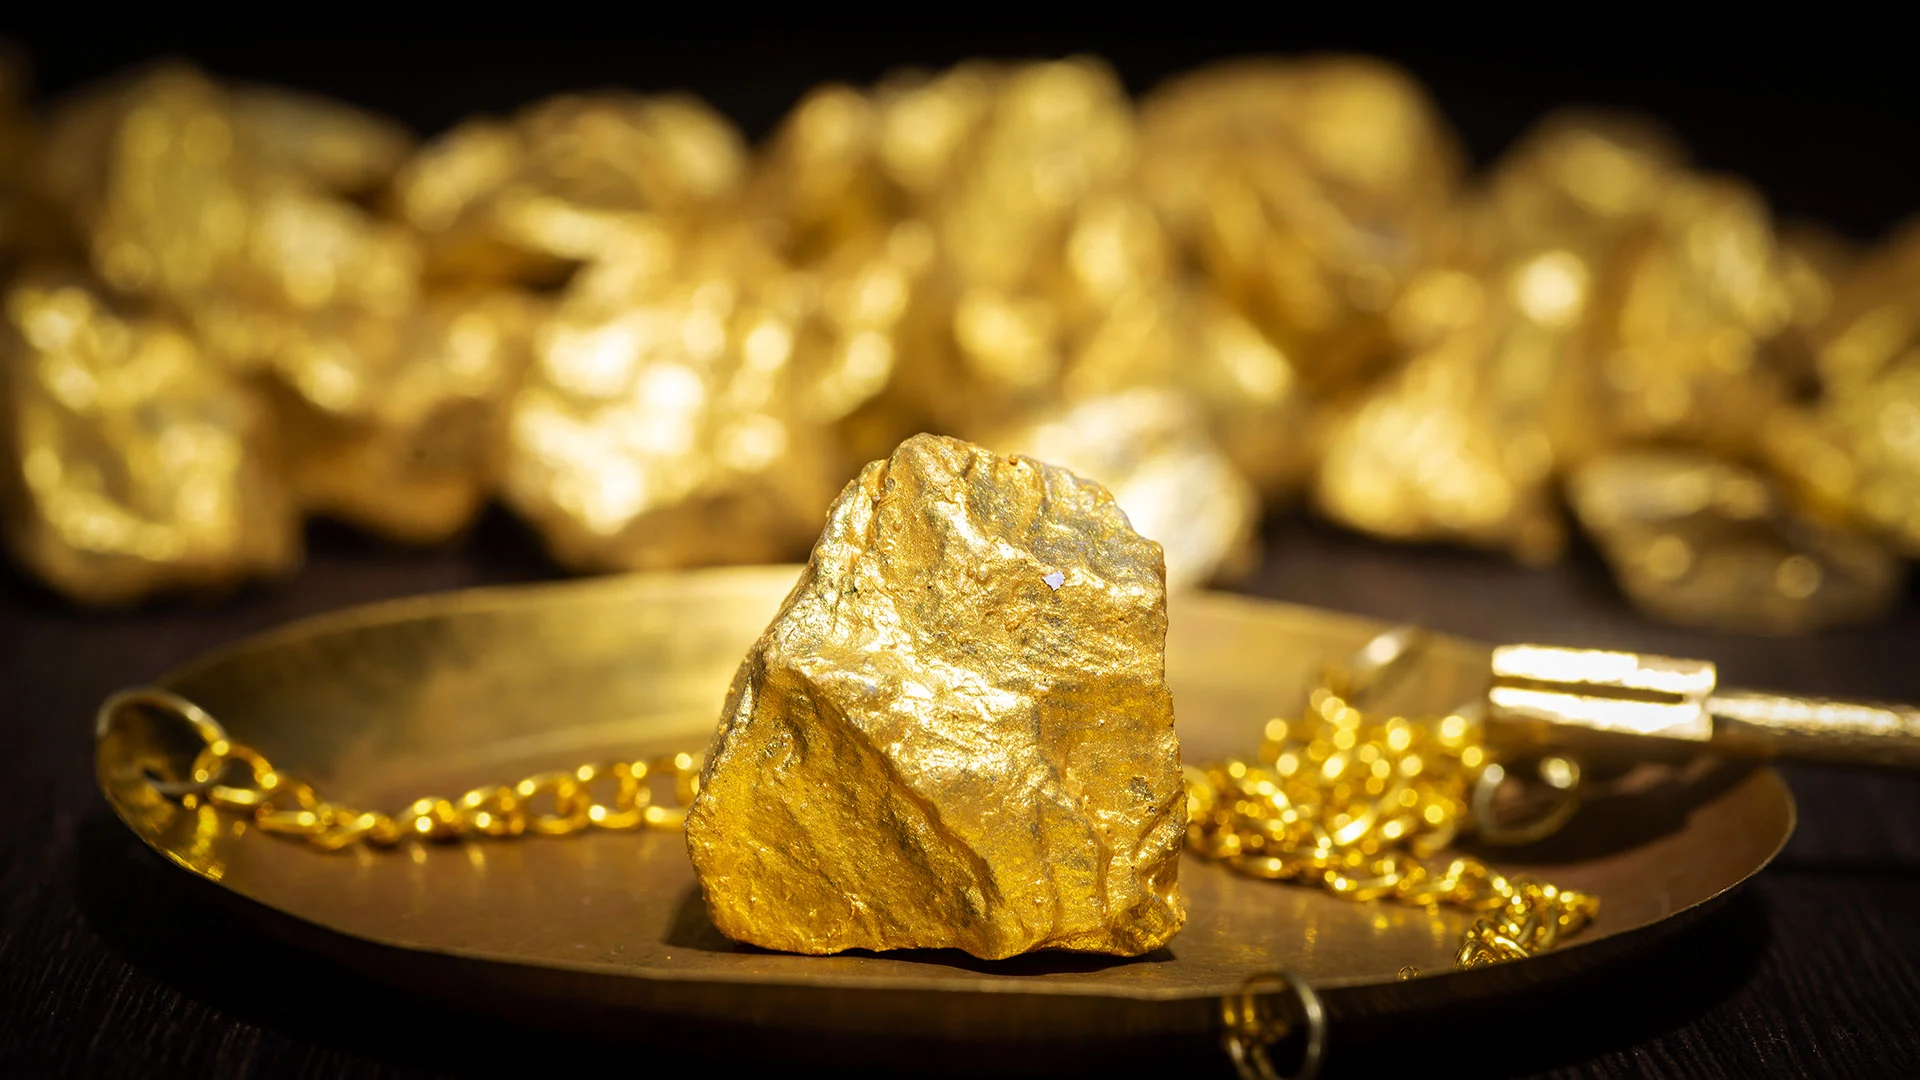 Goldpreis plötzlich wieder unter Druck – darum sollten Sie jetzt zuschlagen! (Foto: onlyyouqj/iStockphoto)